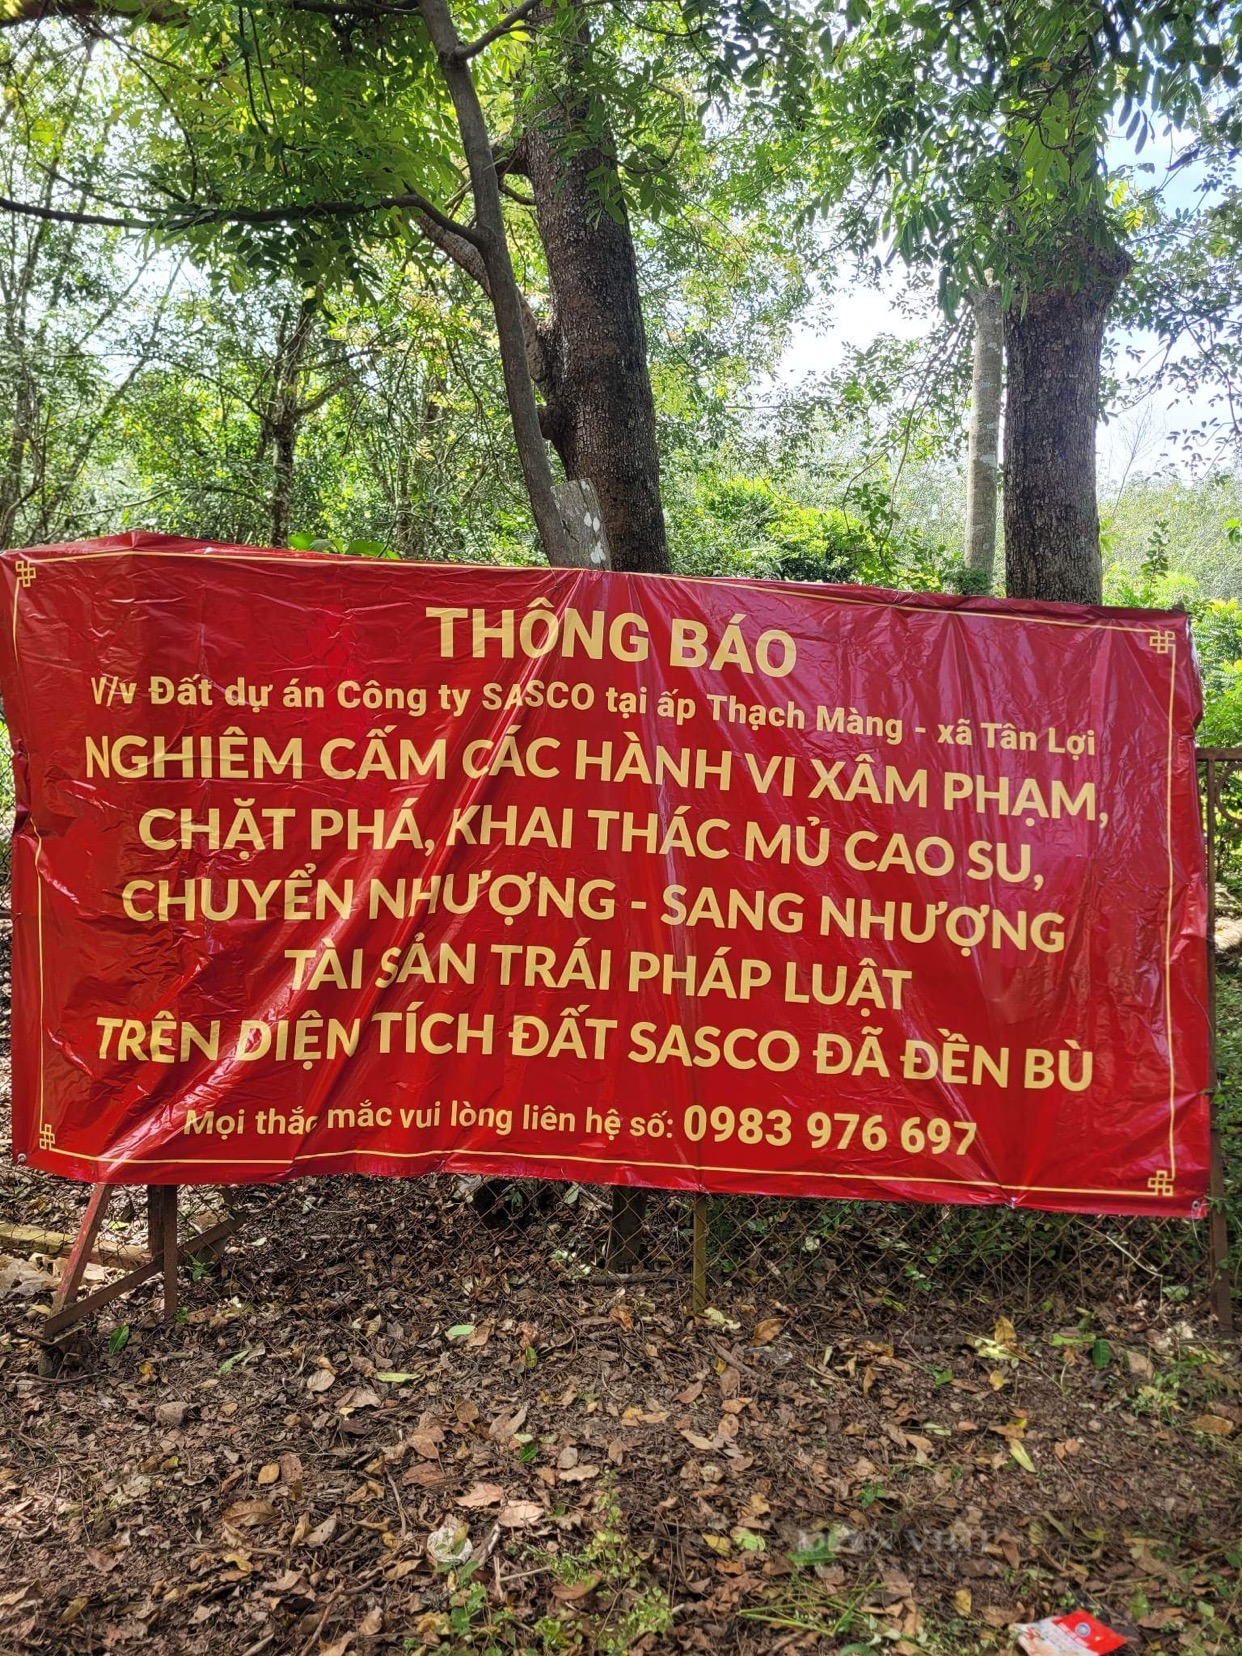 Một nông dân Bình Phước thắng kiện đòi vườn cao su, lật mặt doanh nghiệp phía sau - Ảnh 3.